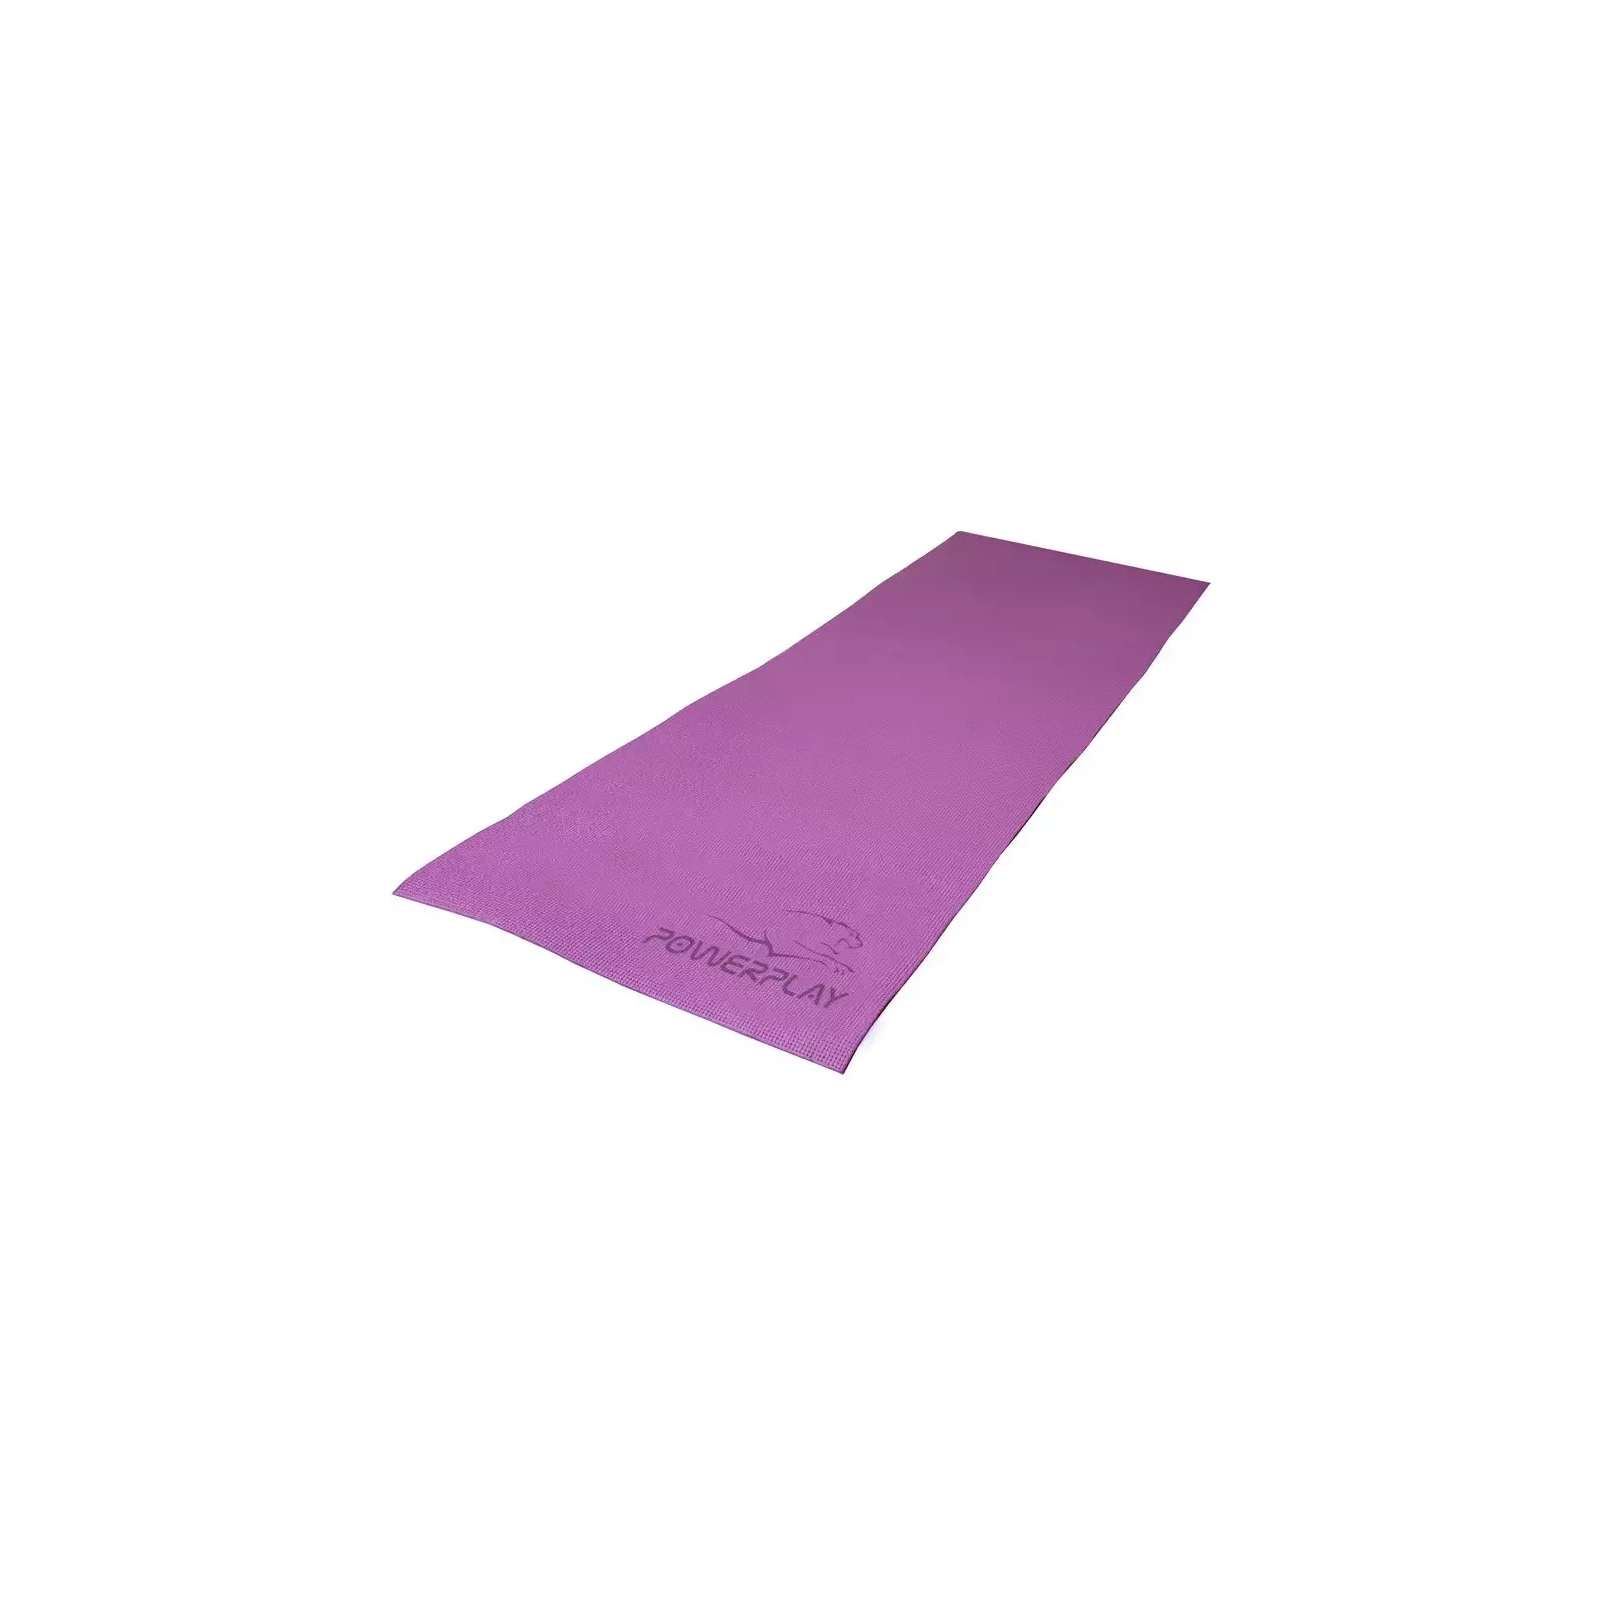 Коврик для йоги PowerPlay 4010 PVC Yoga Mat 173 x 61 x 0.6 см Лавандовий (PP_4010_Lavender_(173*0,6)) изображение 6